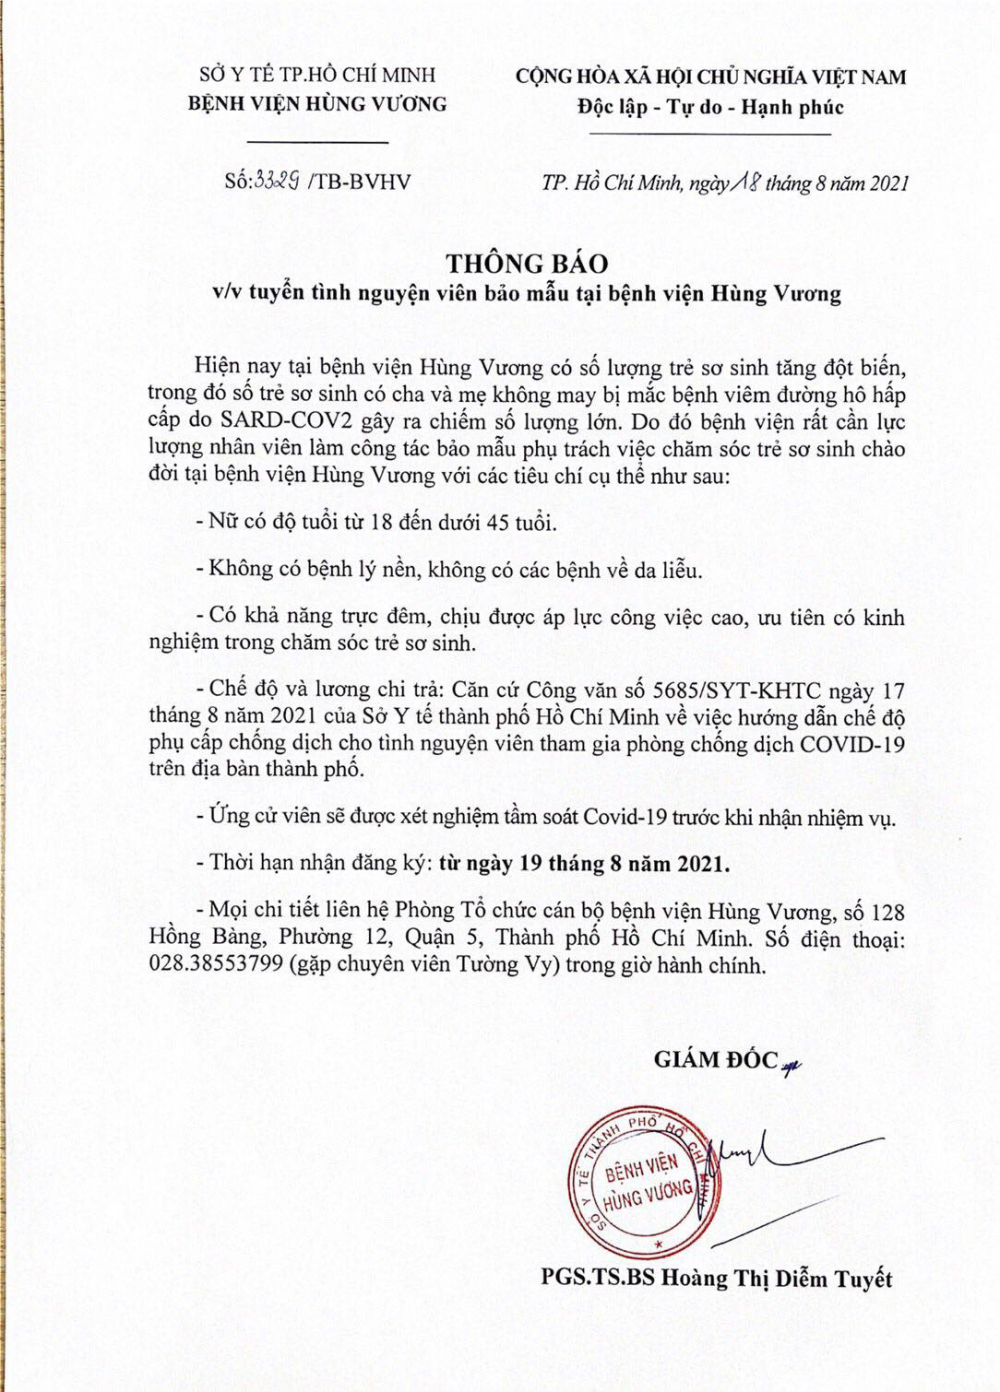 Thông báo tuyển tình nguyện viên của Bệnh viện Hùng Vương